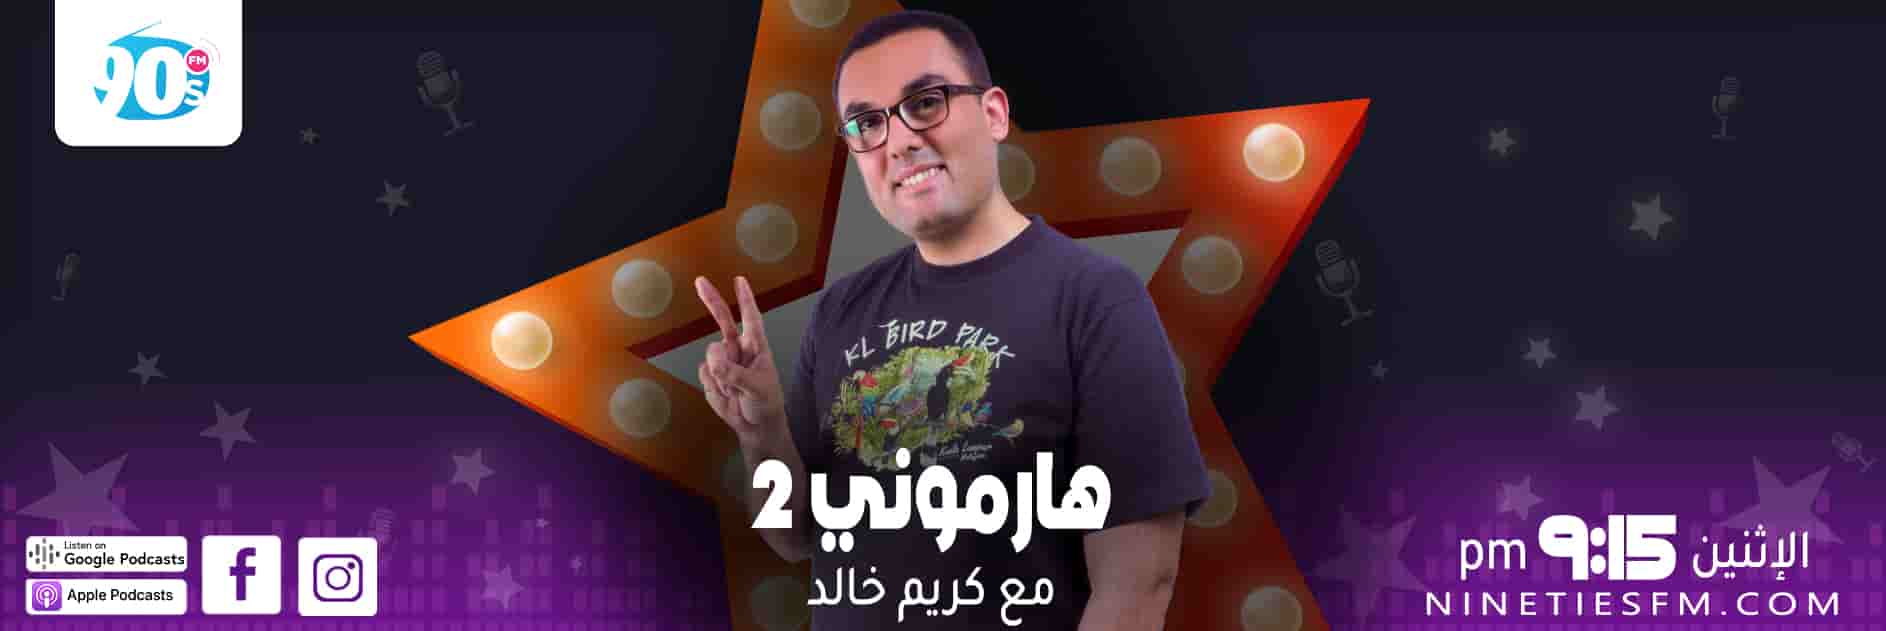 هارموني 2 - كريم خالد